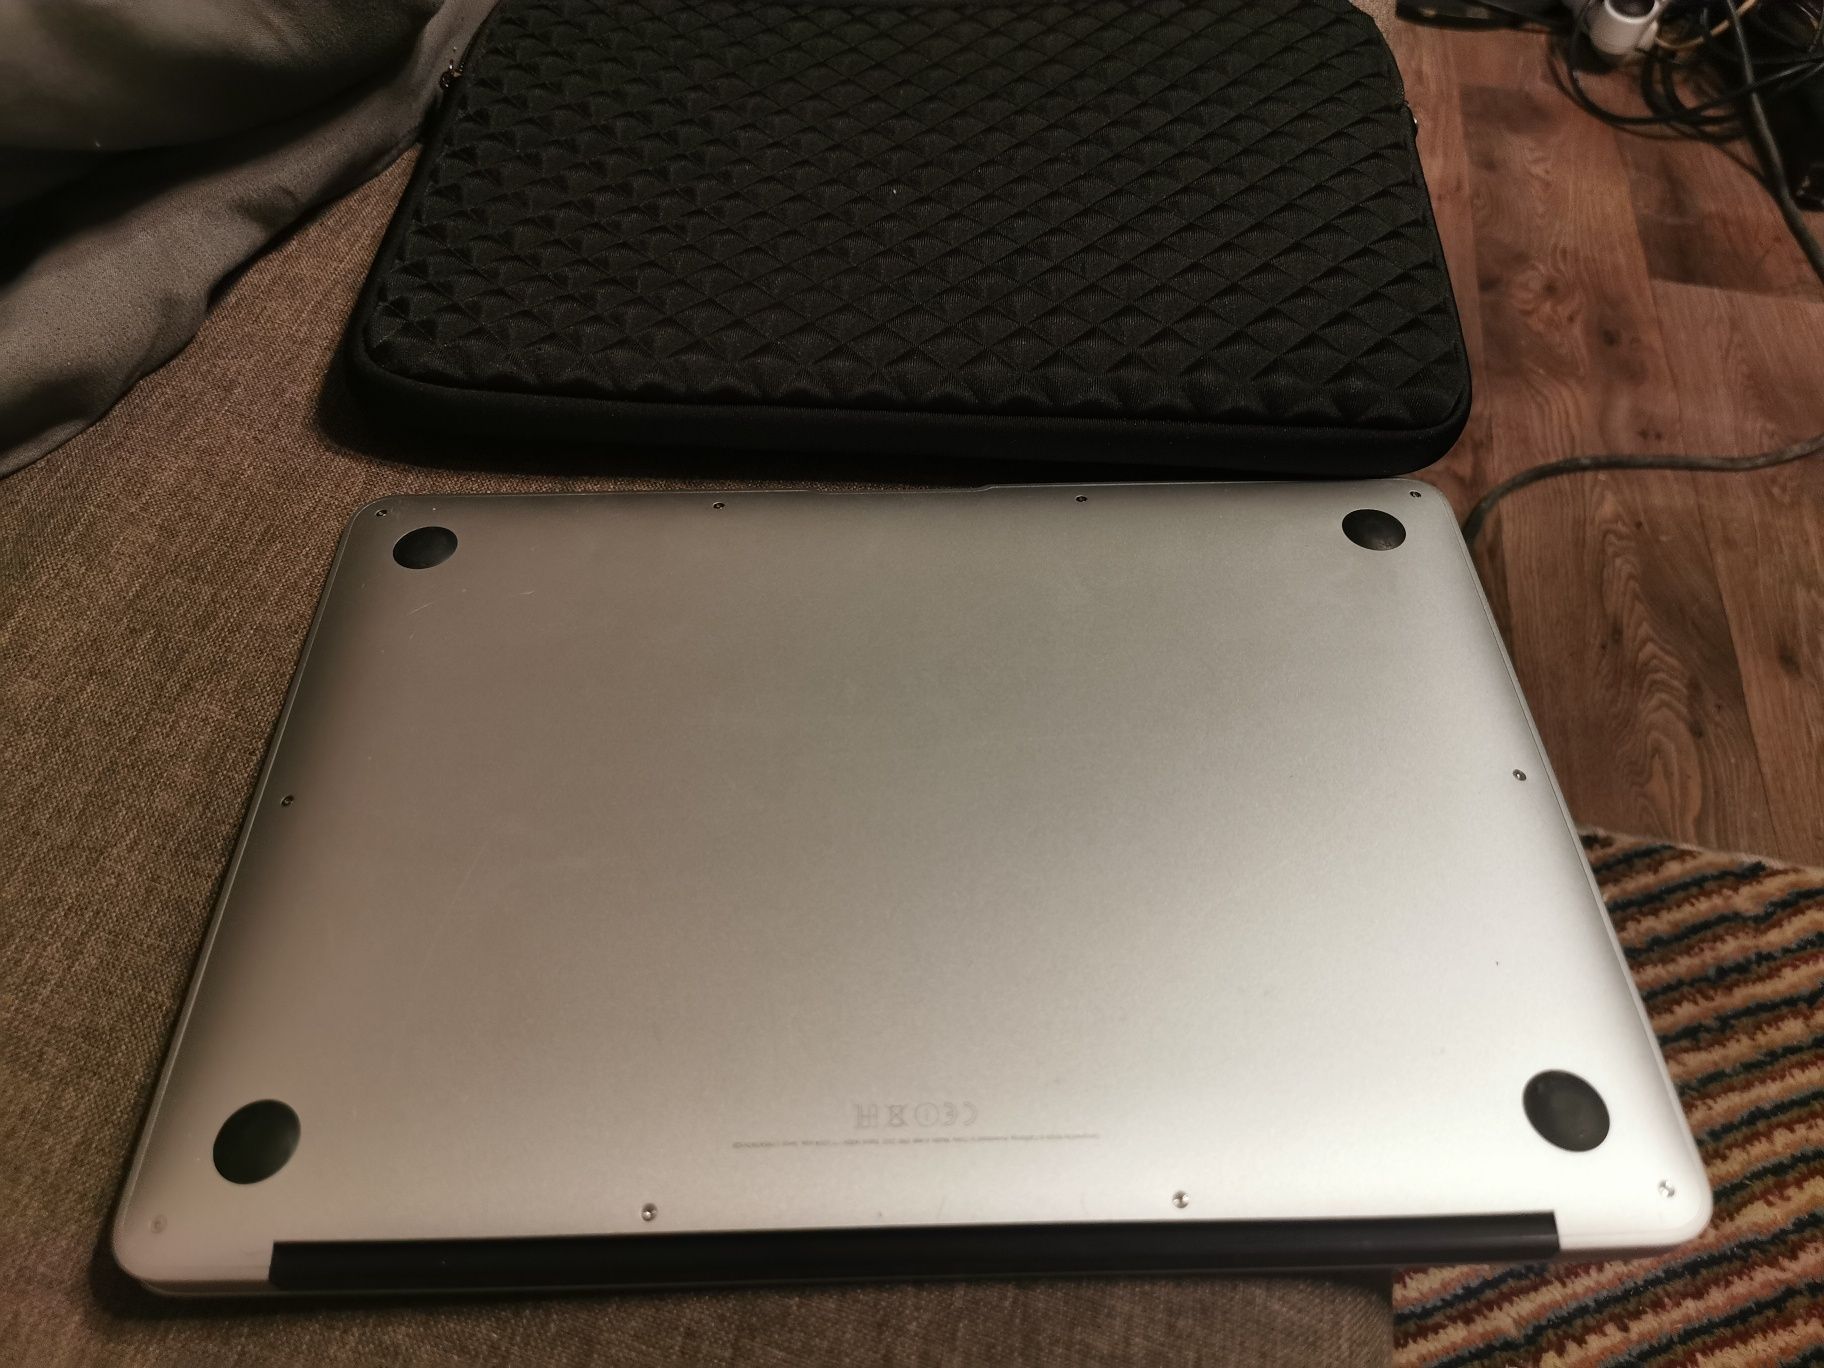 Macbook Air 13 inch i5